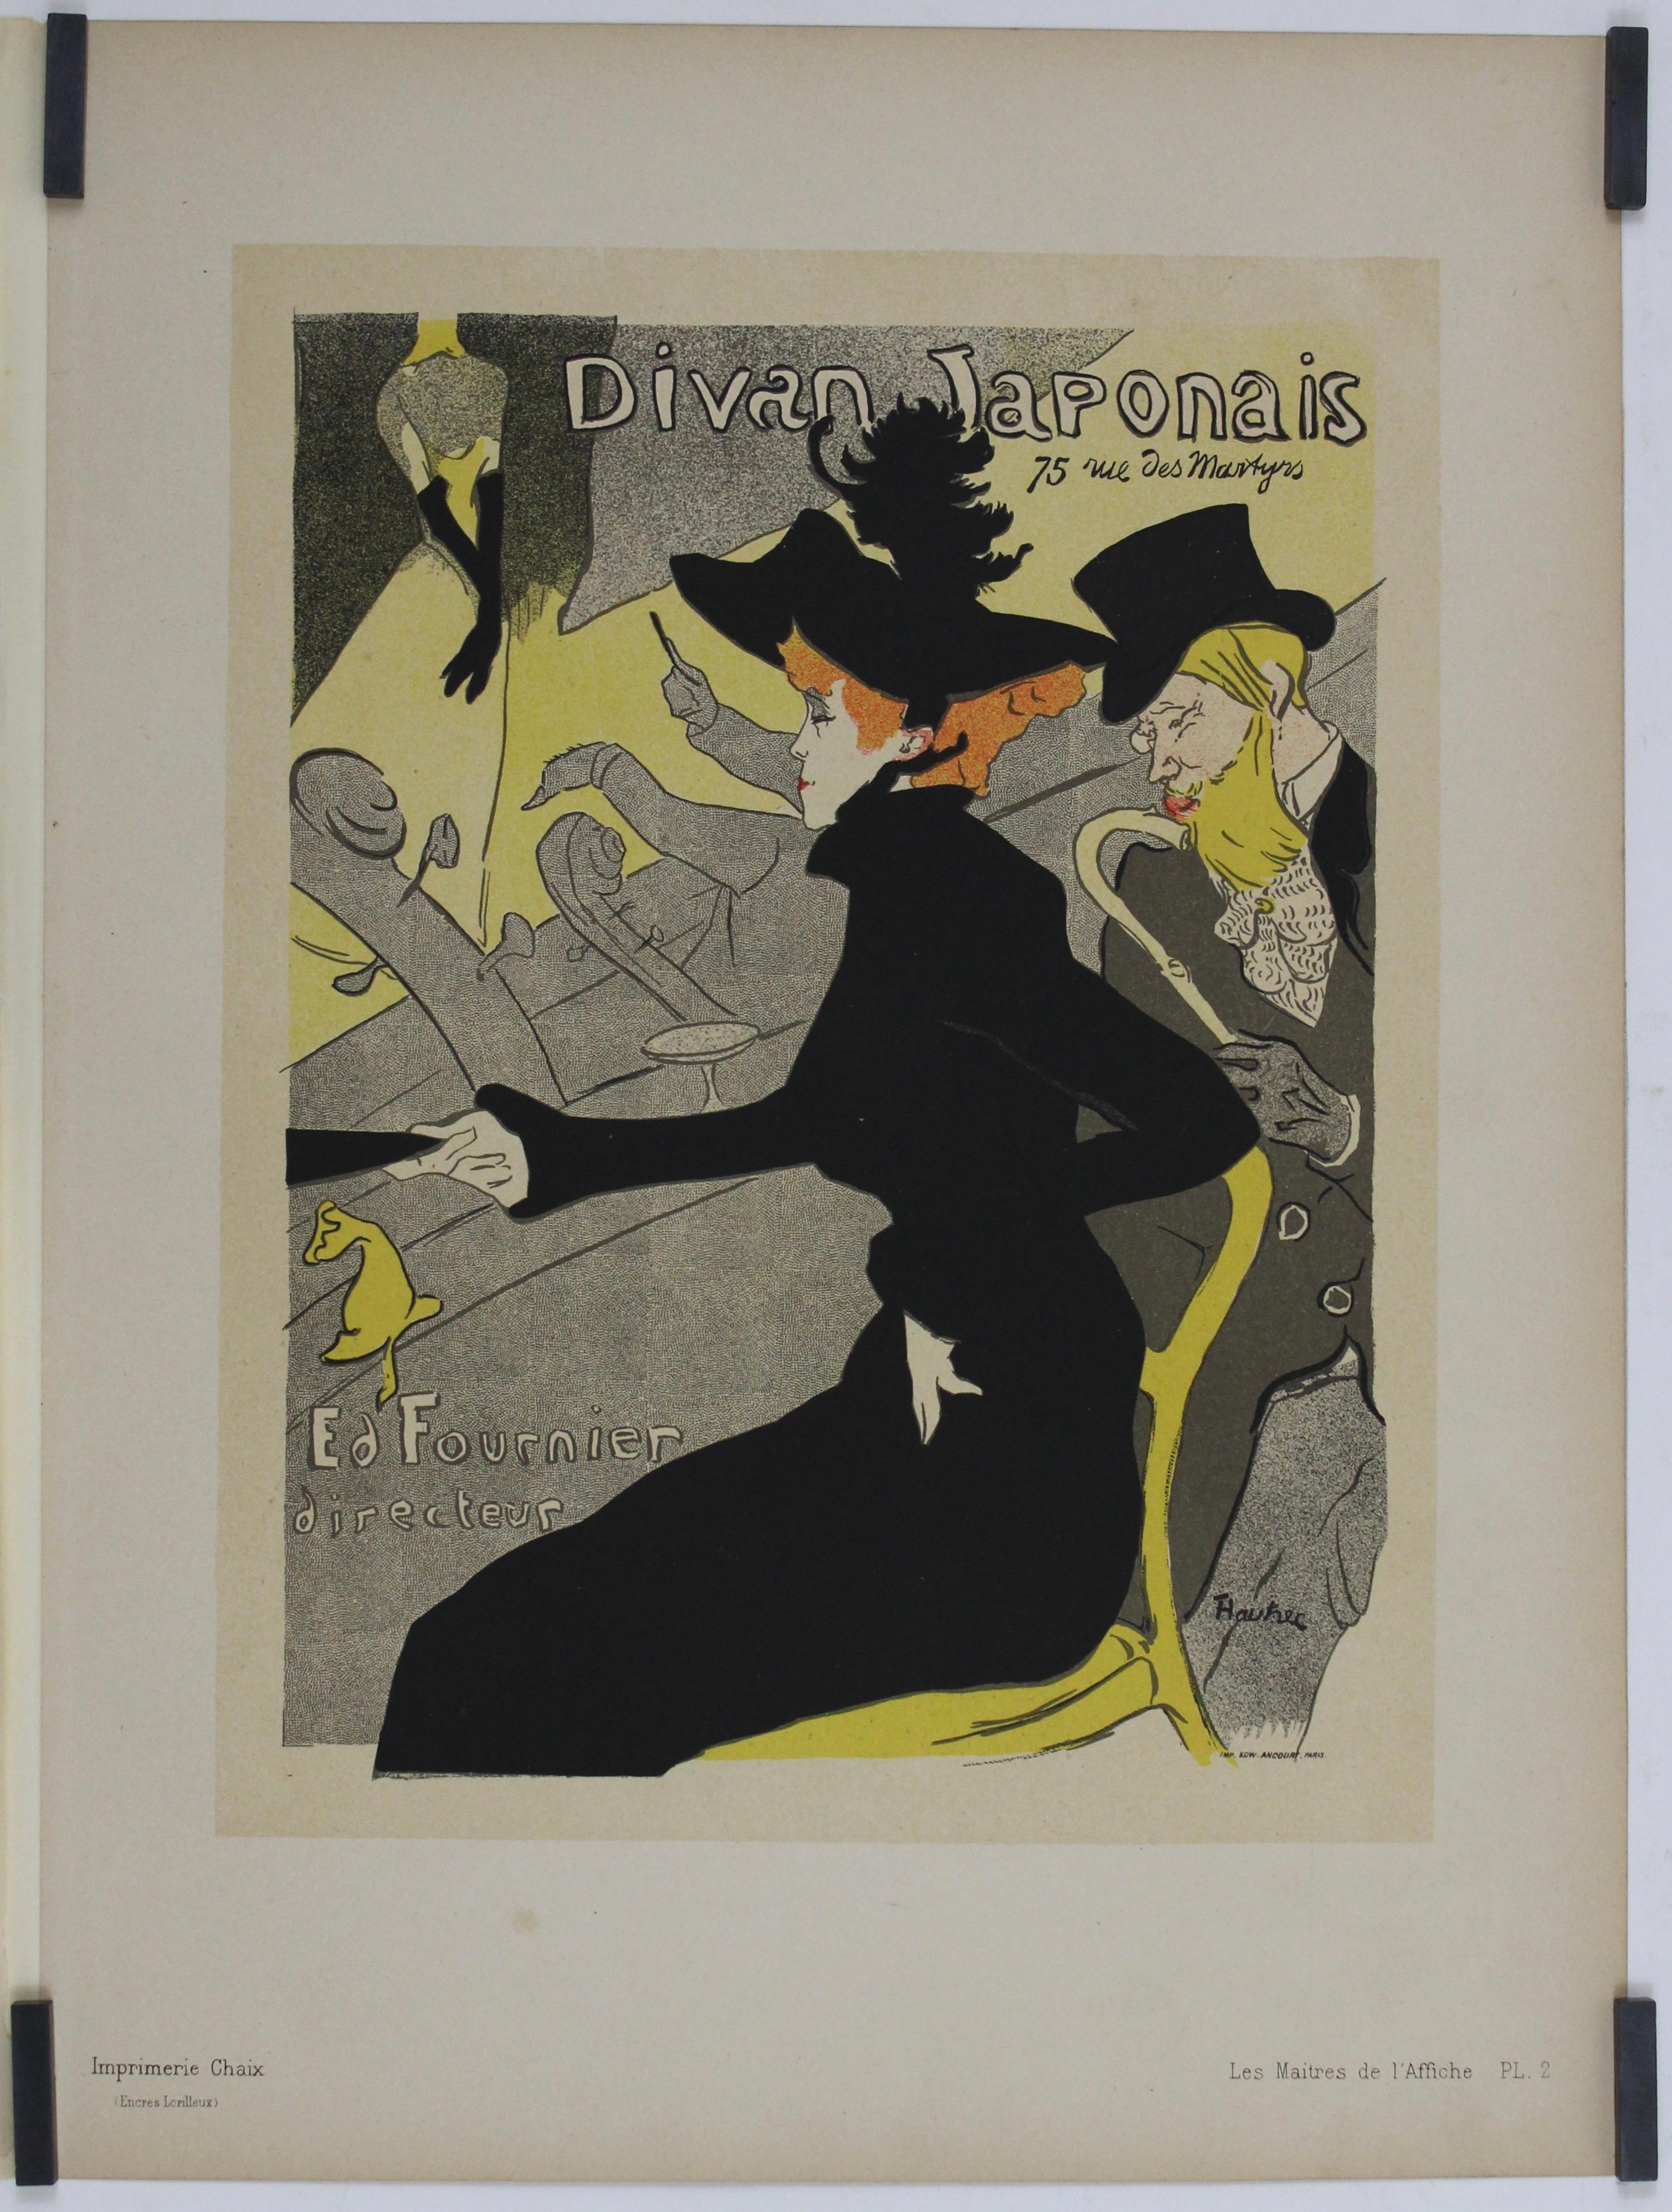 1896 Original poster - Les Maîtres de l'affiche Pl. 2 - Divan Japonais - Art Nouveau Print by Henri de Toulouse-Lautrec